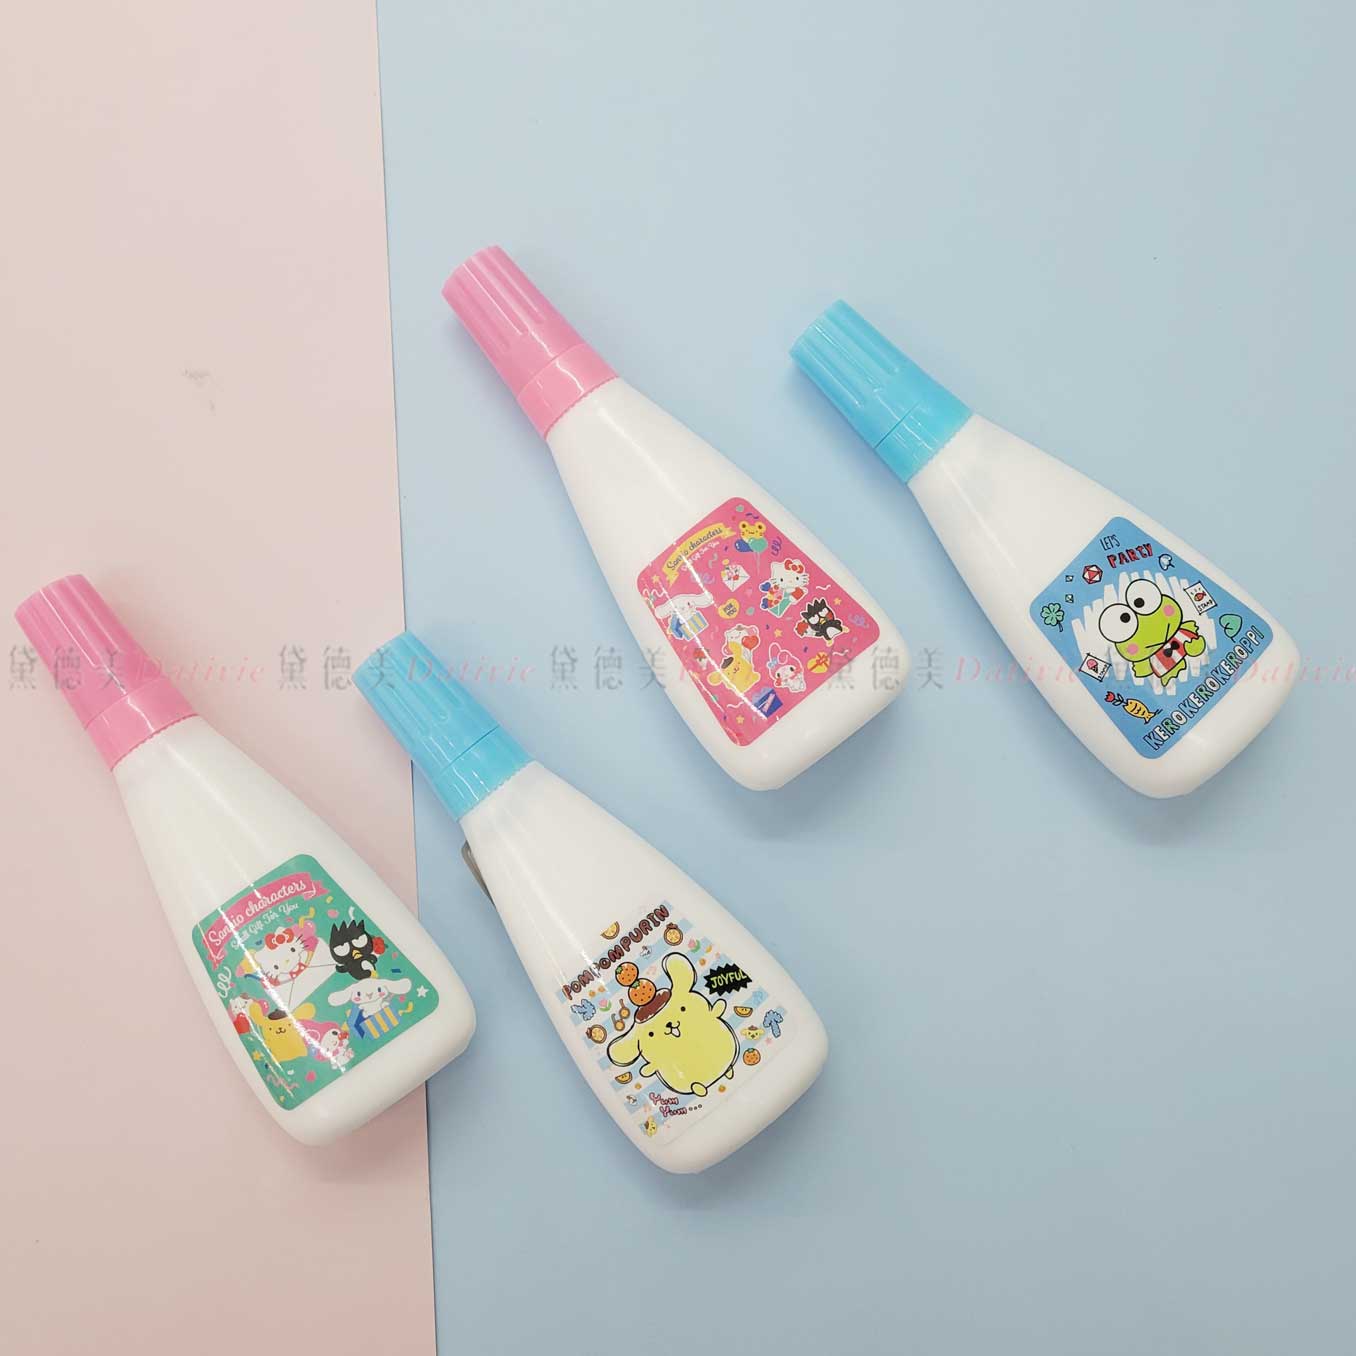 三角瓶白膠-三麗鷗 Sanrio 正版授權